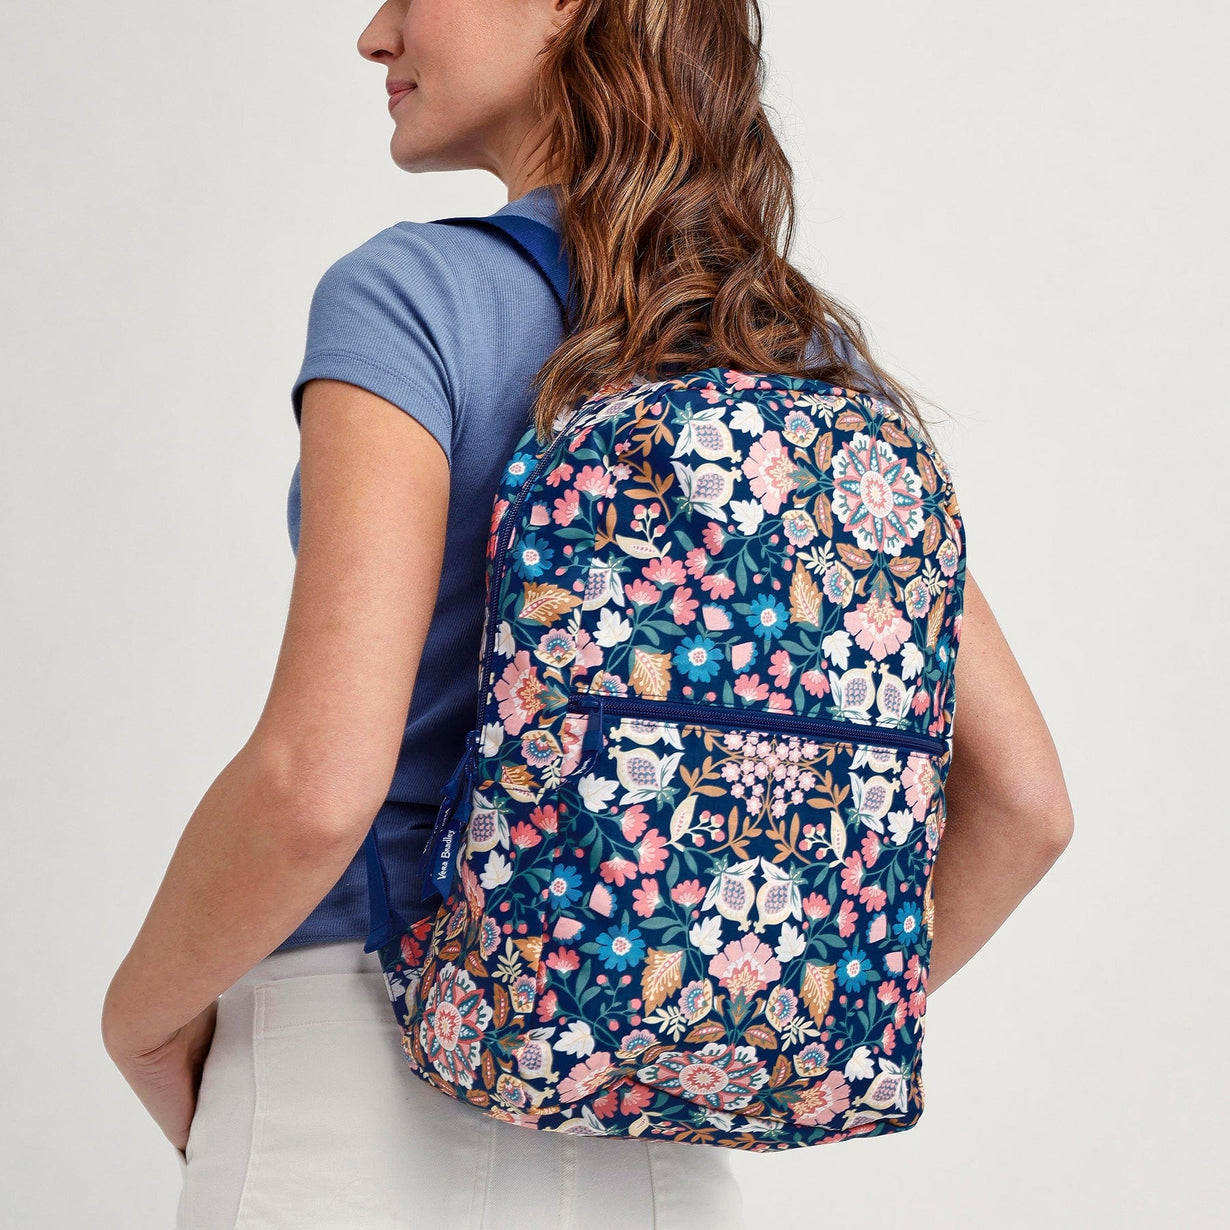 Packable Backpack | Vera Bradley